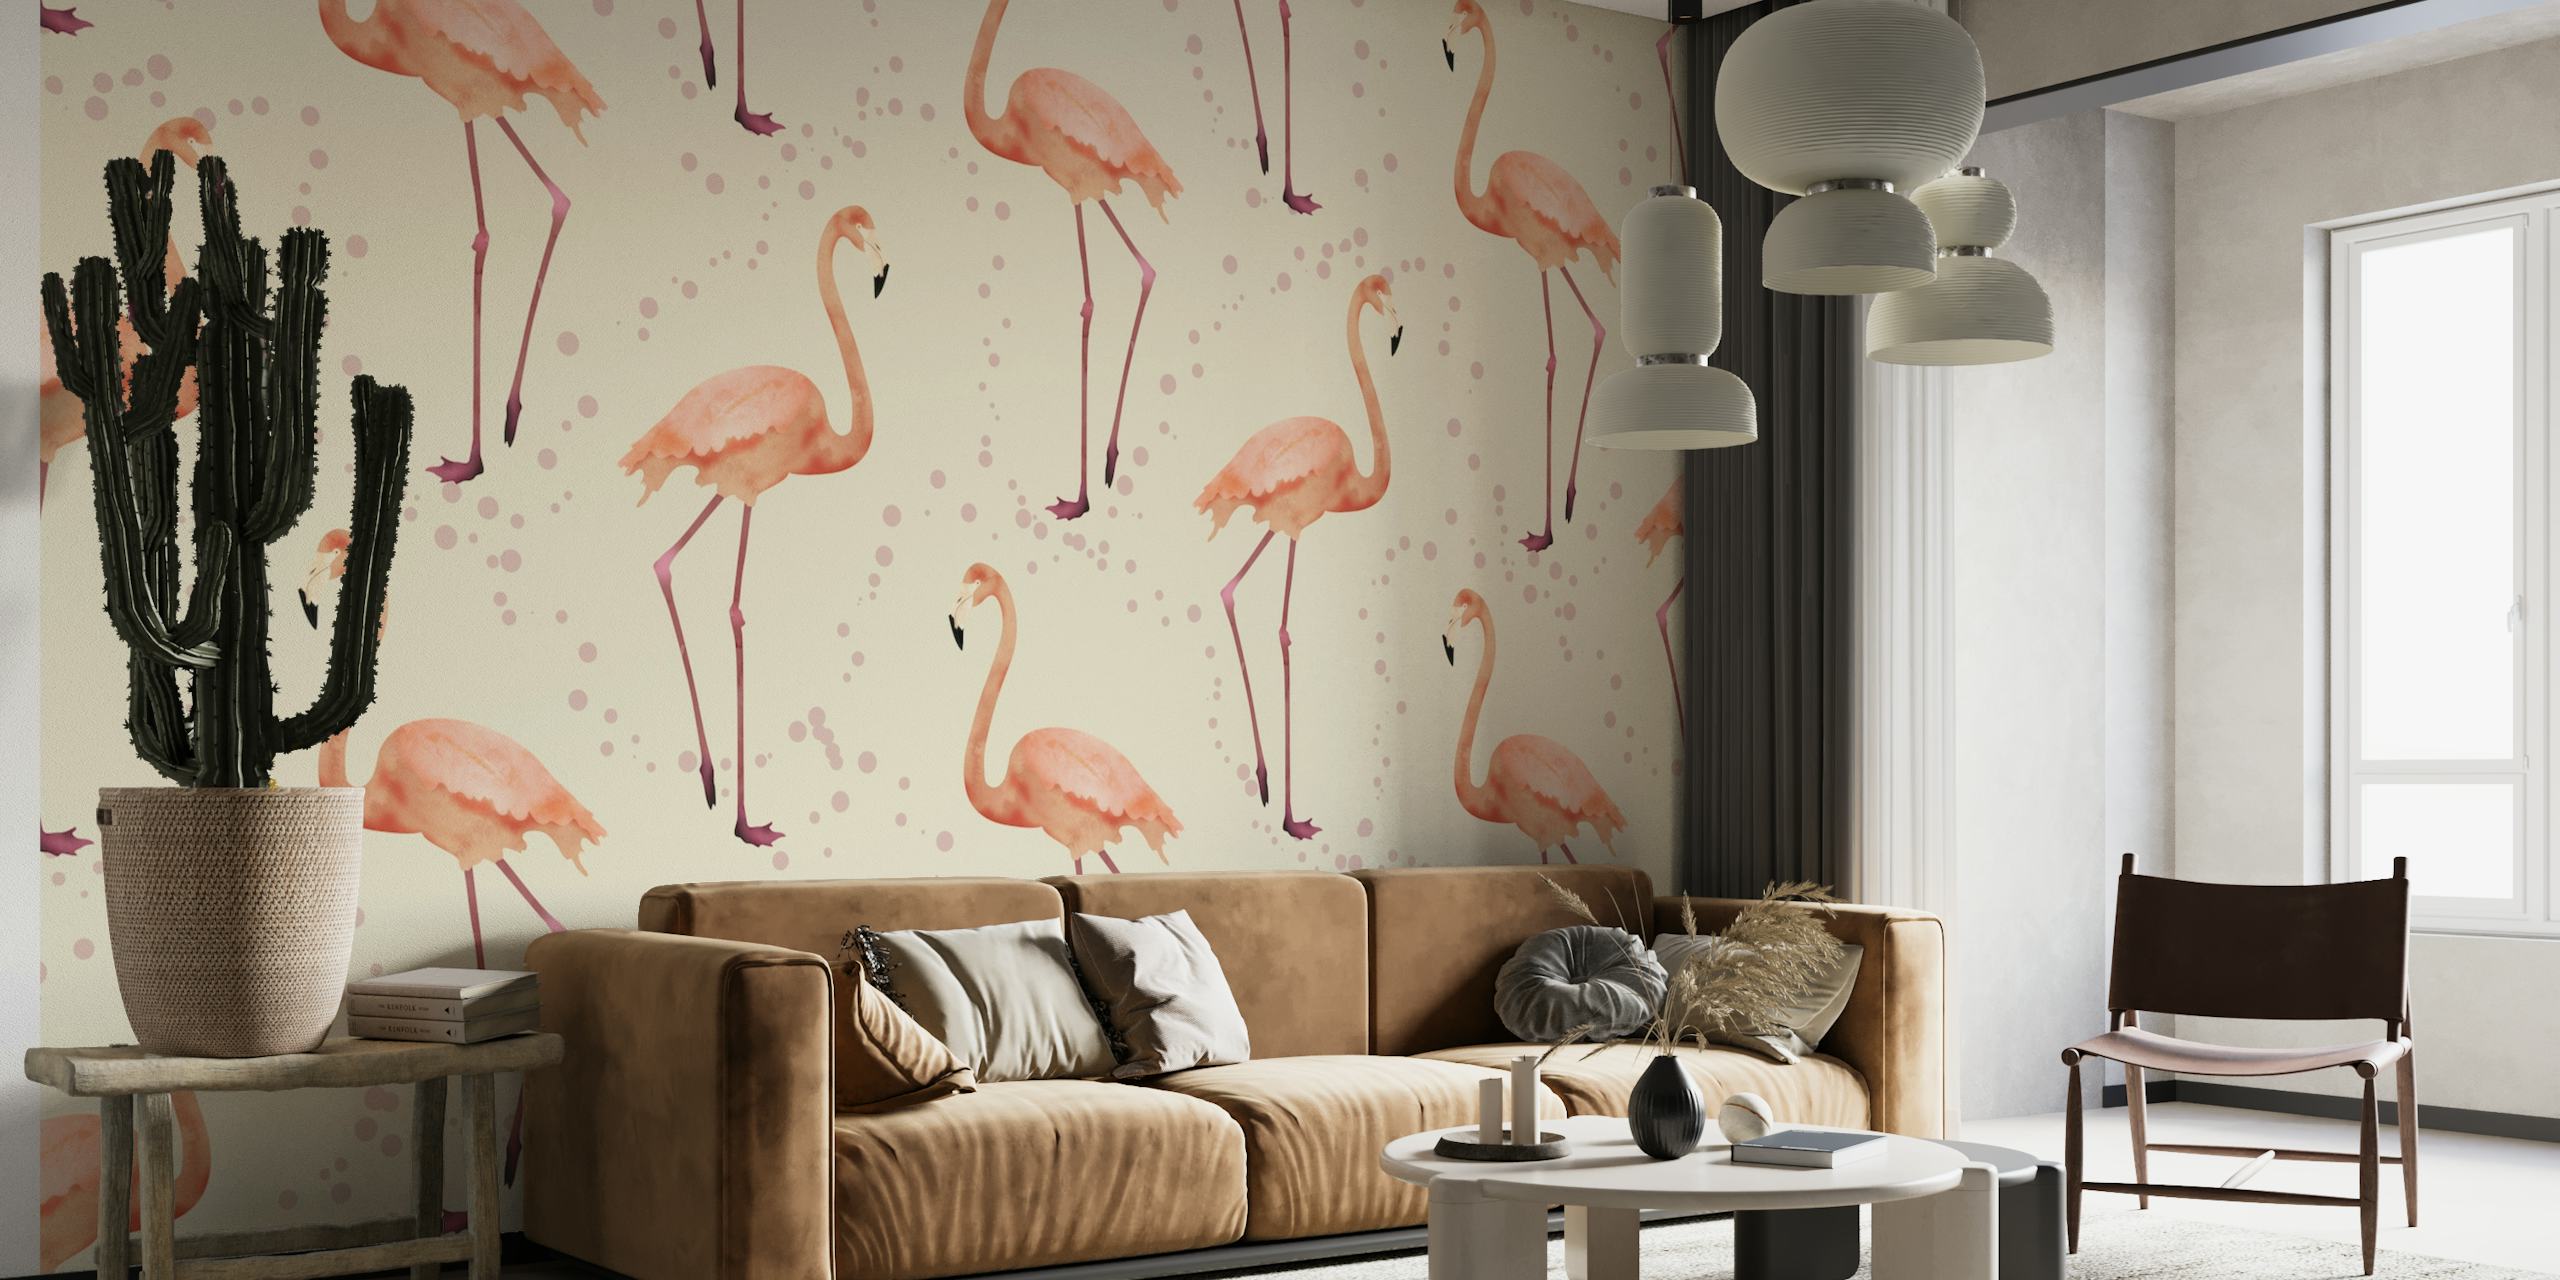 The Flamingo Dance pearl wallpaper